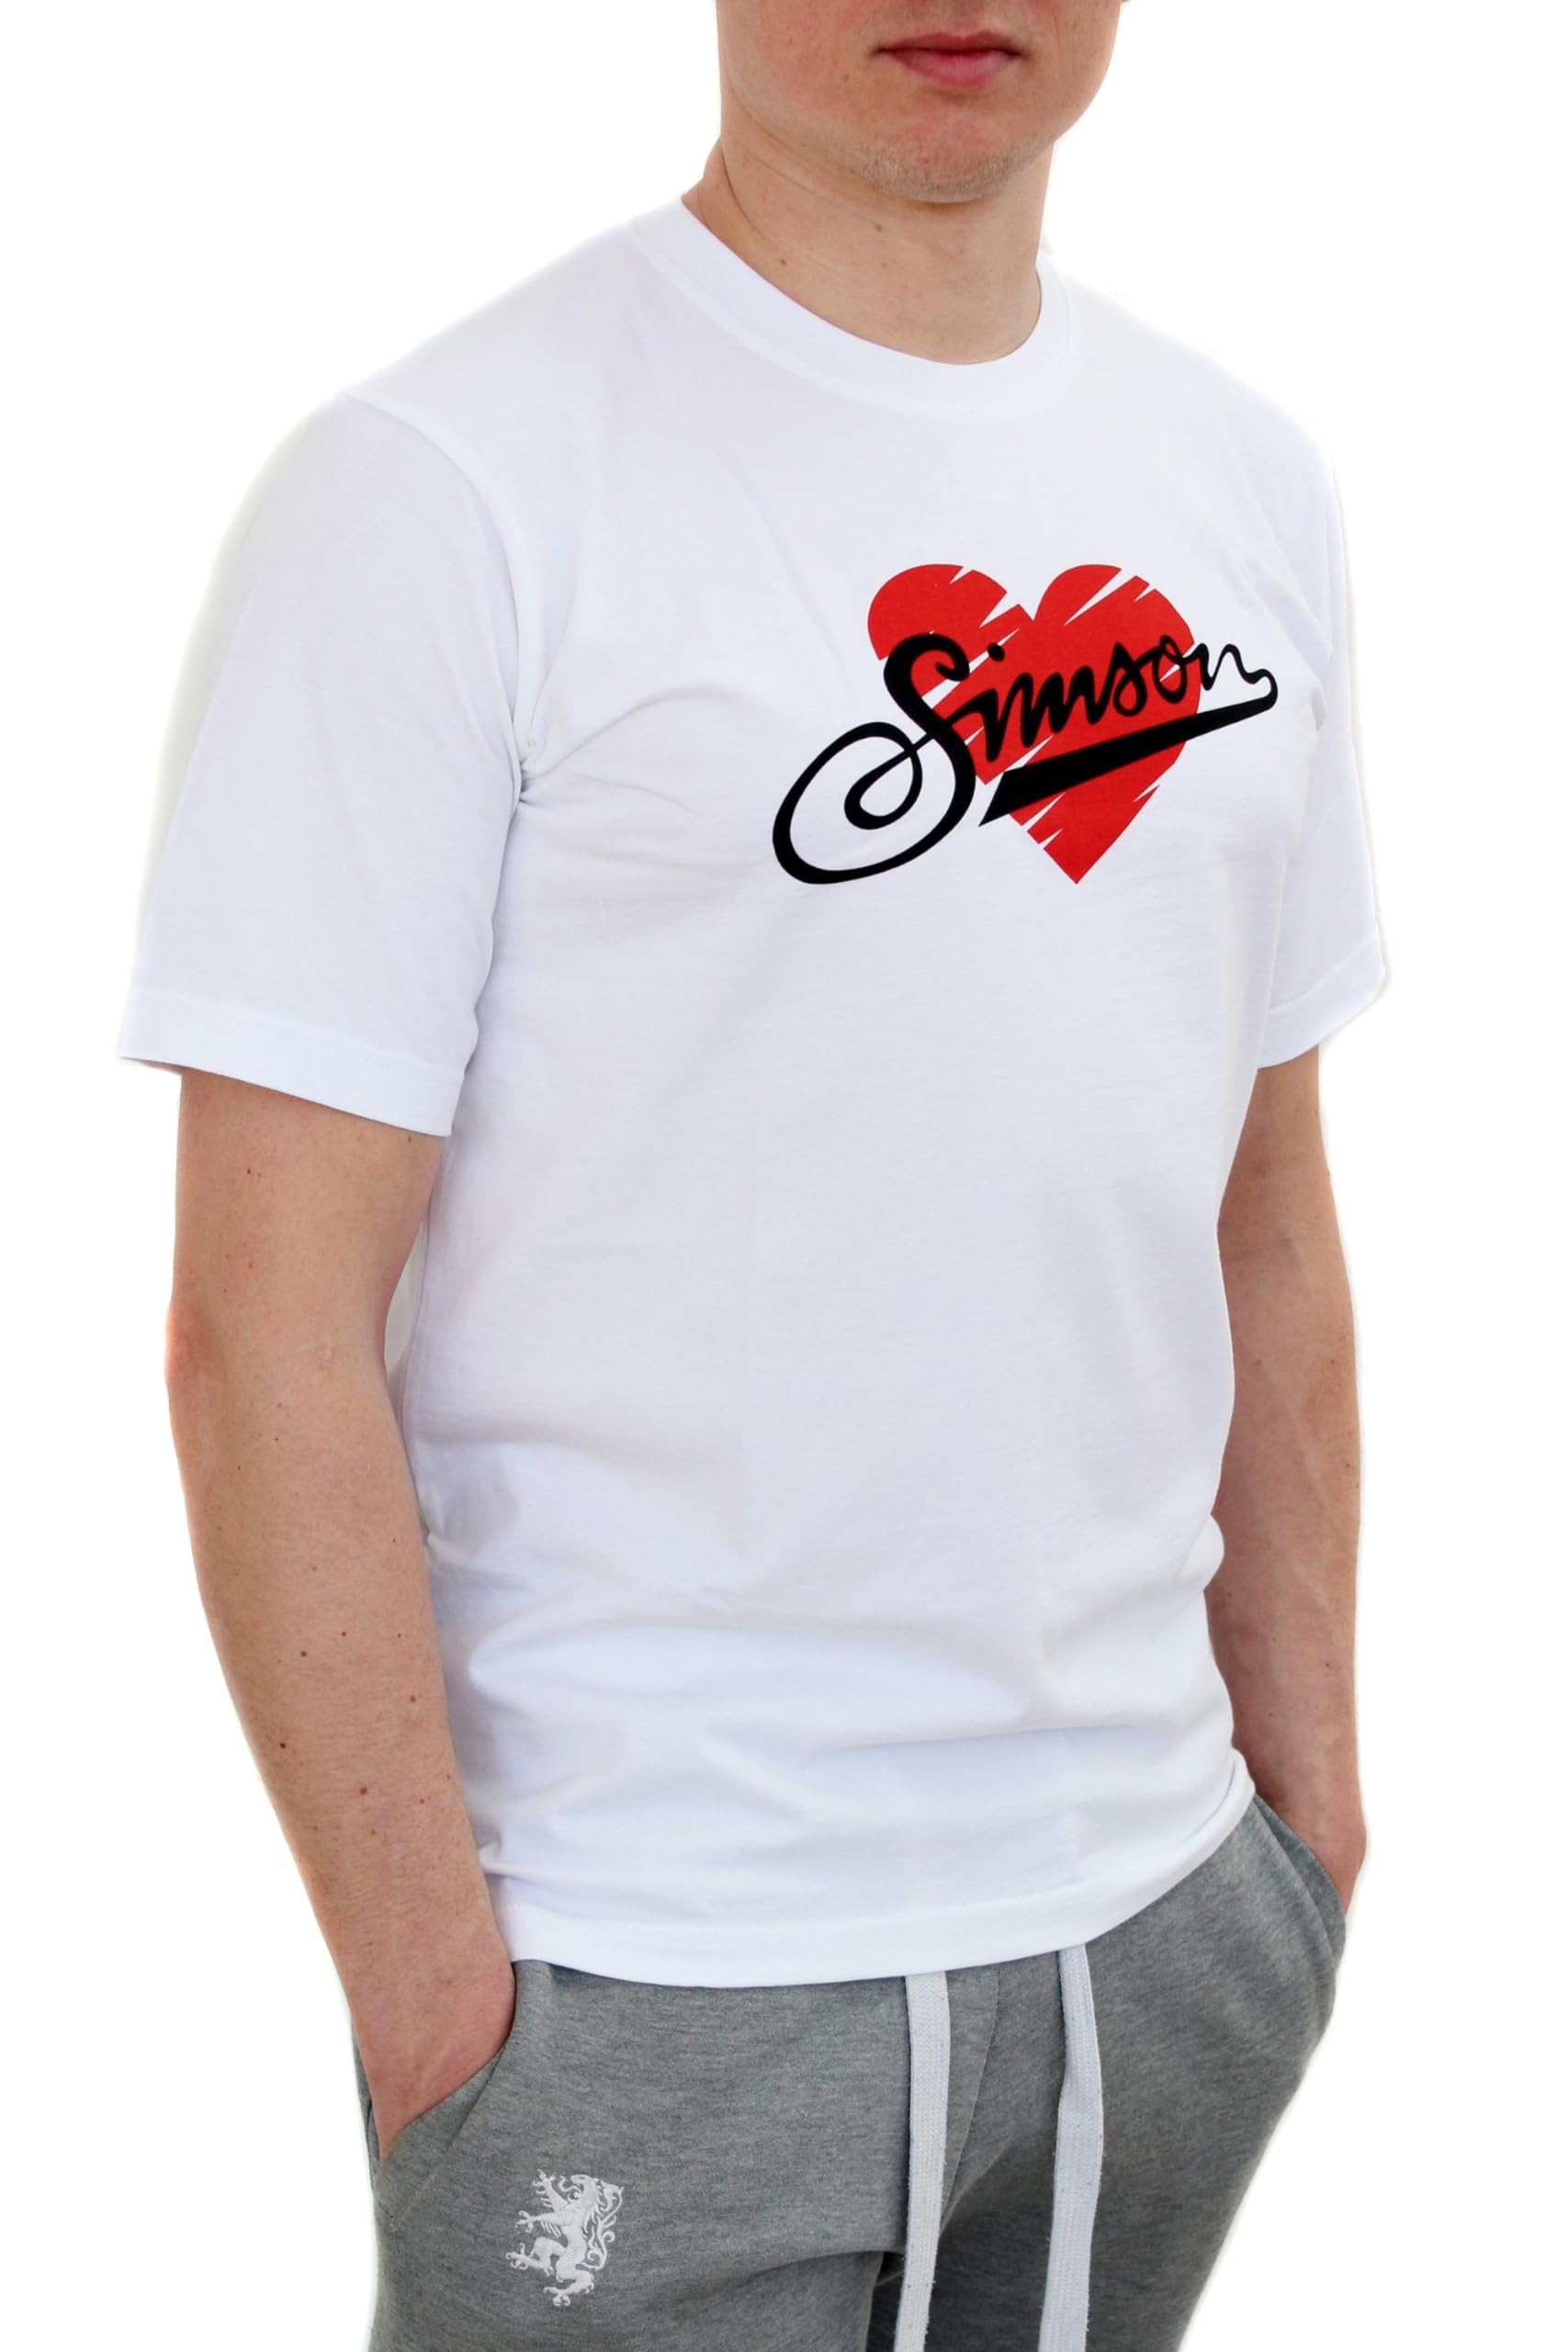 Simson T-Shirt, Motiv - Love Simson - 100% Baumwolle, Weiß, Größen XS - XXXL, original MZA Fan-Artikel, Größe:XS von MZA